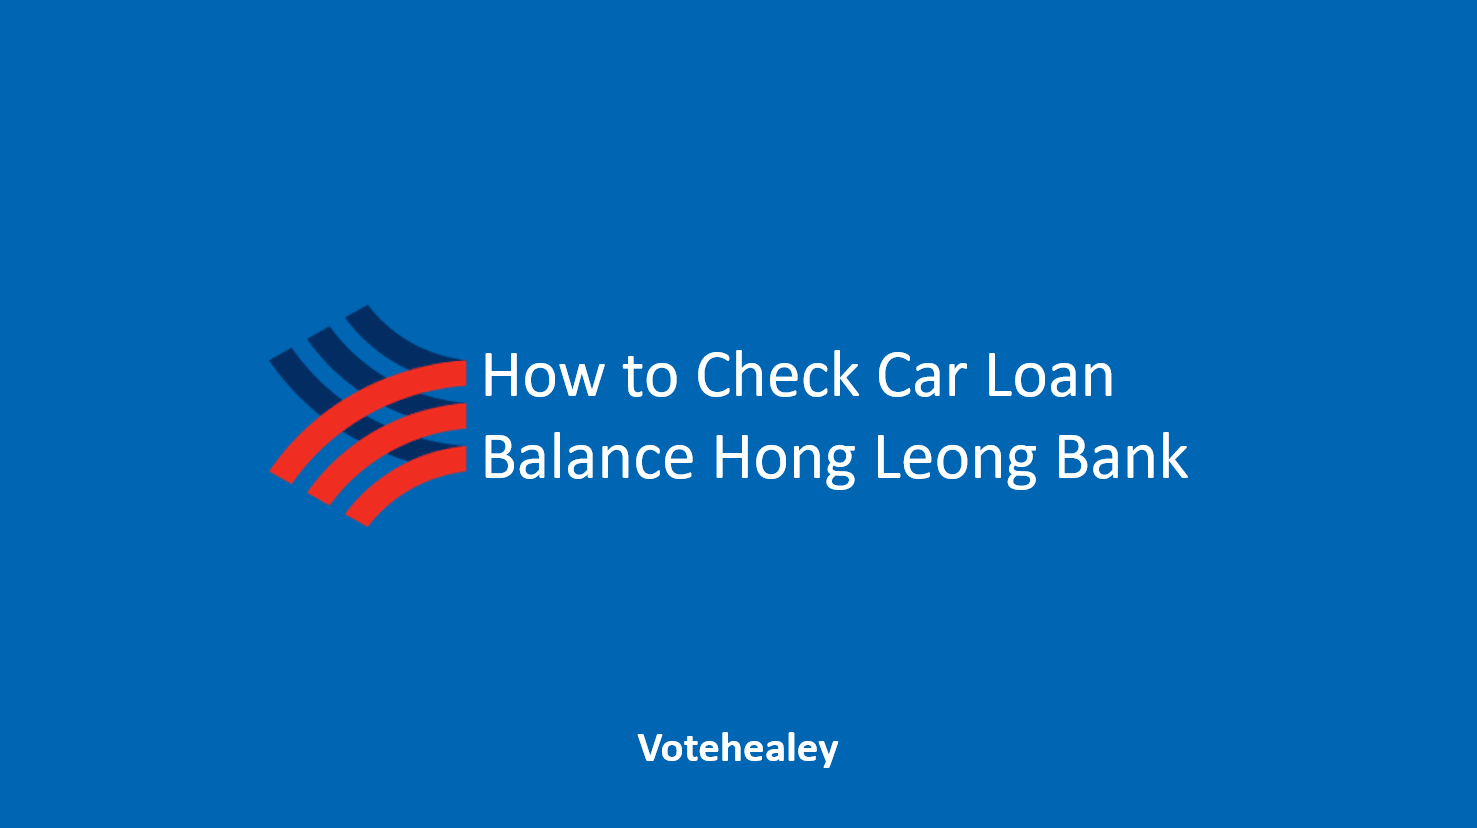 How to Check Car Loan Balance Hong Leong Bank